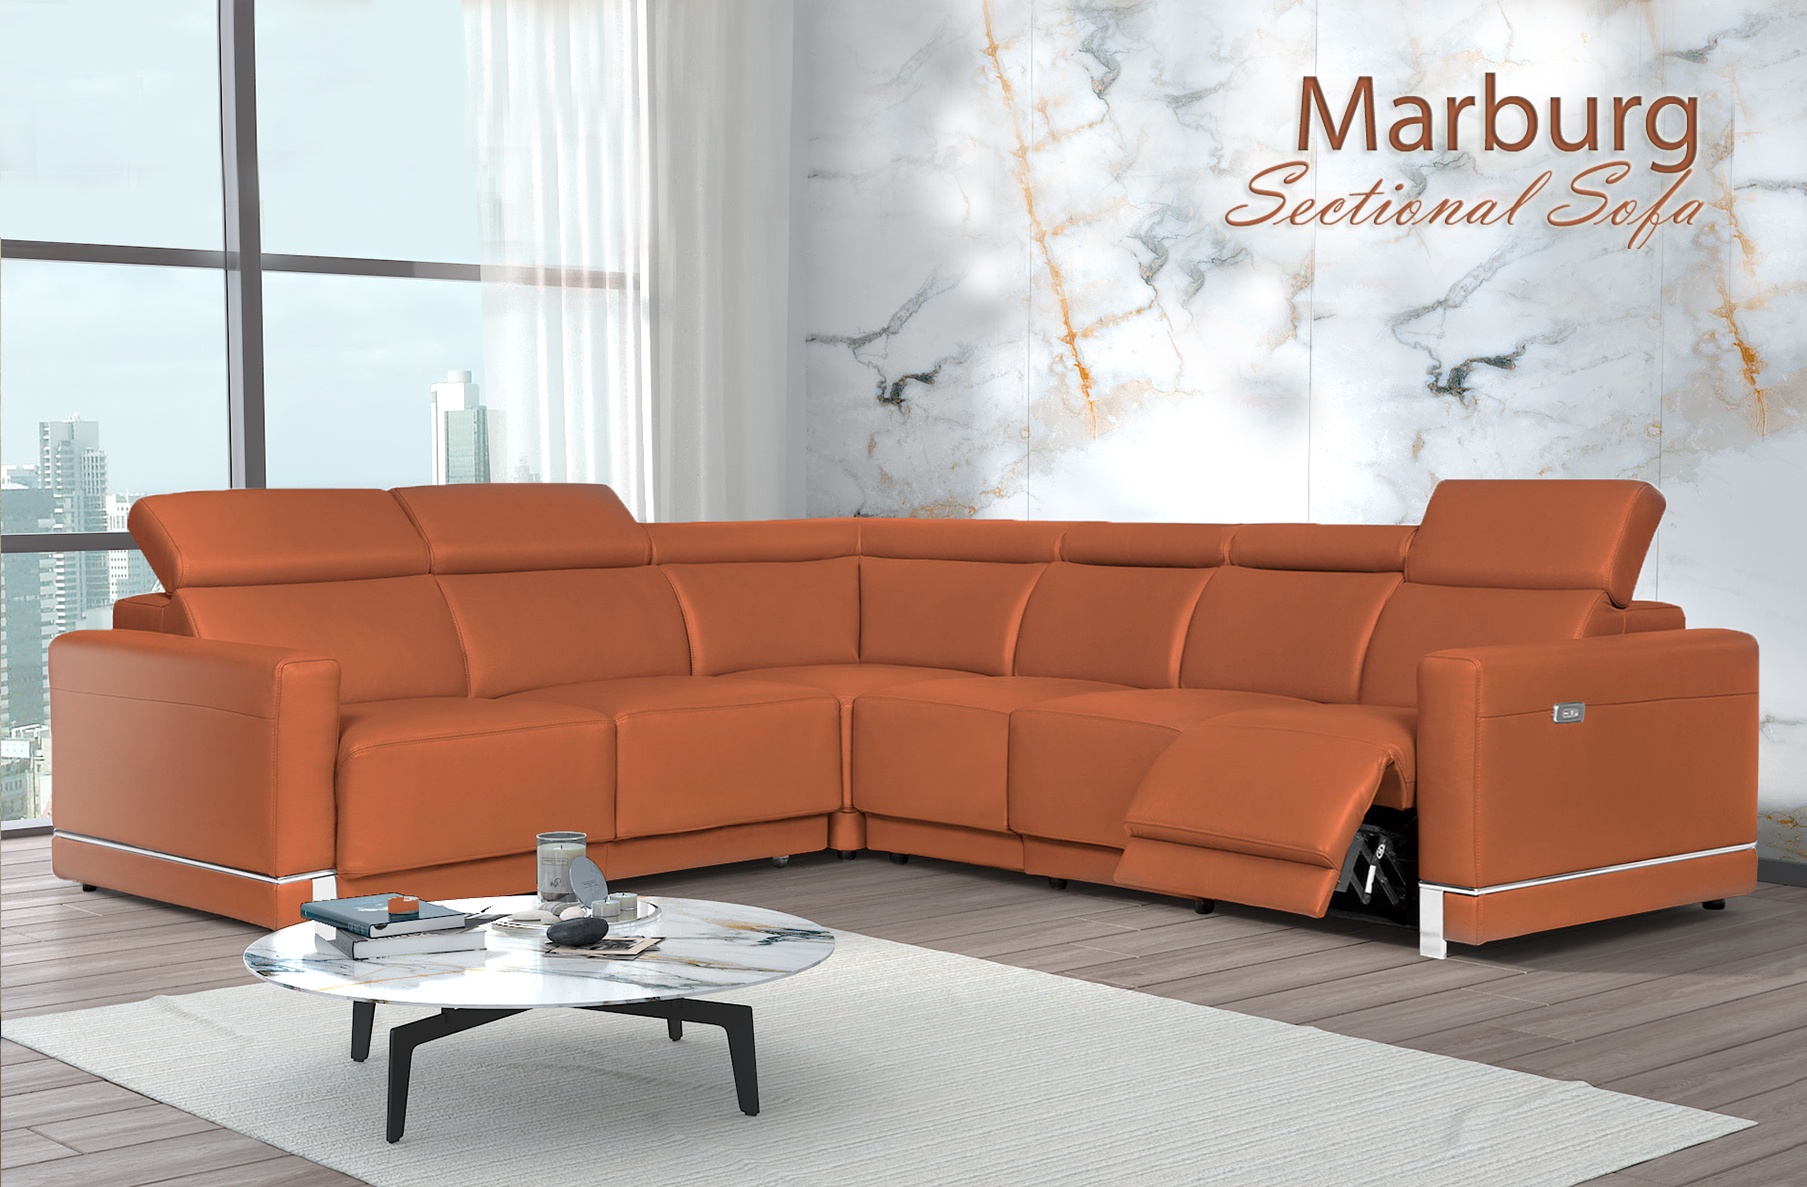 Marburg Sectional Sofa, Cheap